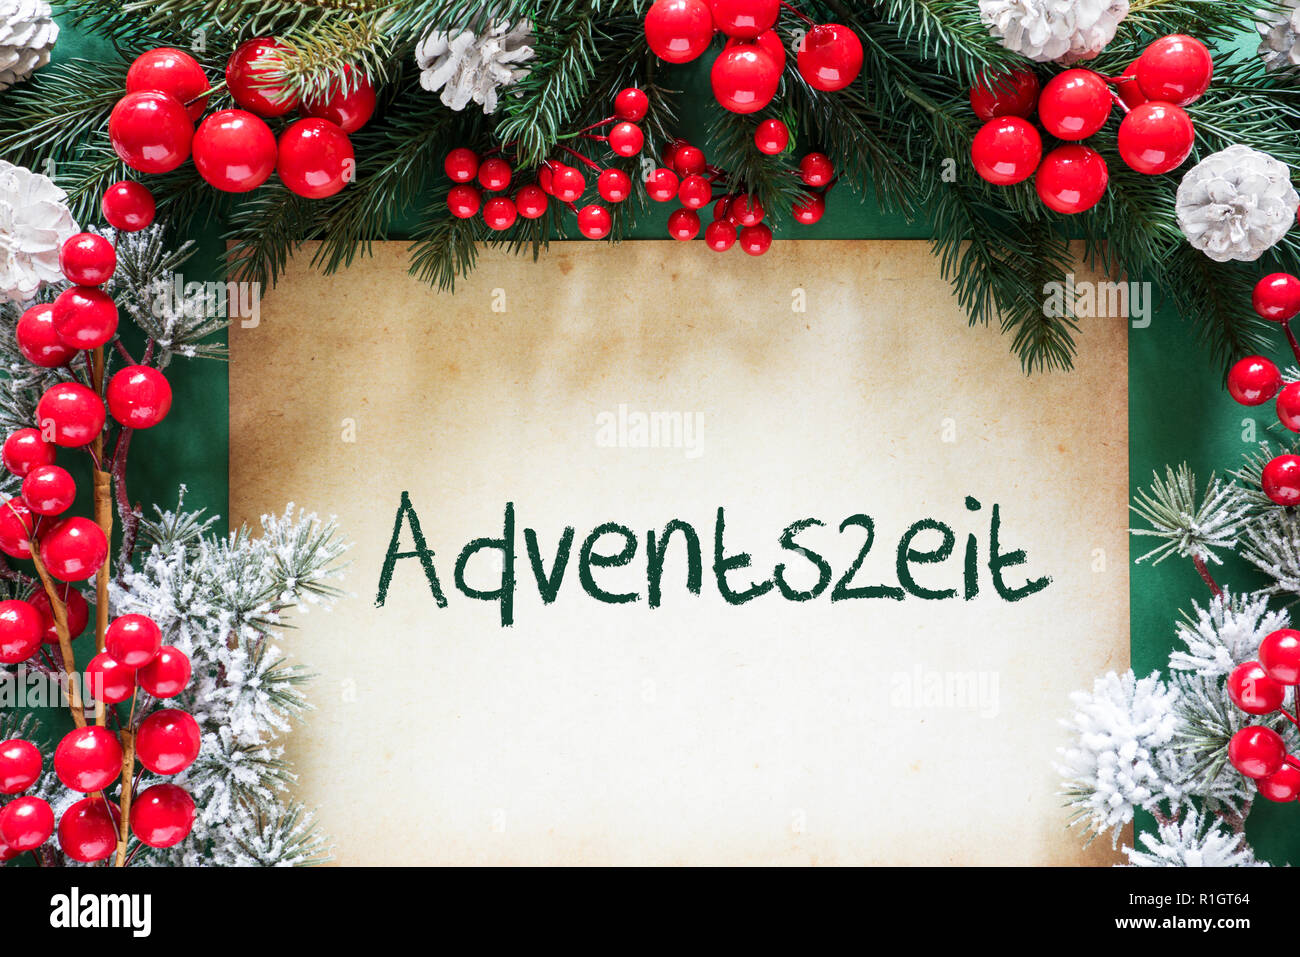 Decoración de Navidad, Adviento significa Adventszeit alemán Foto de stock